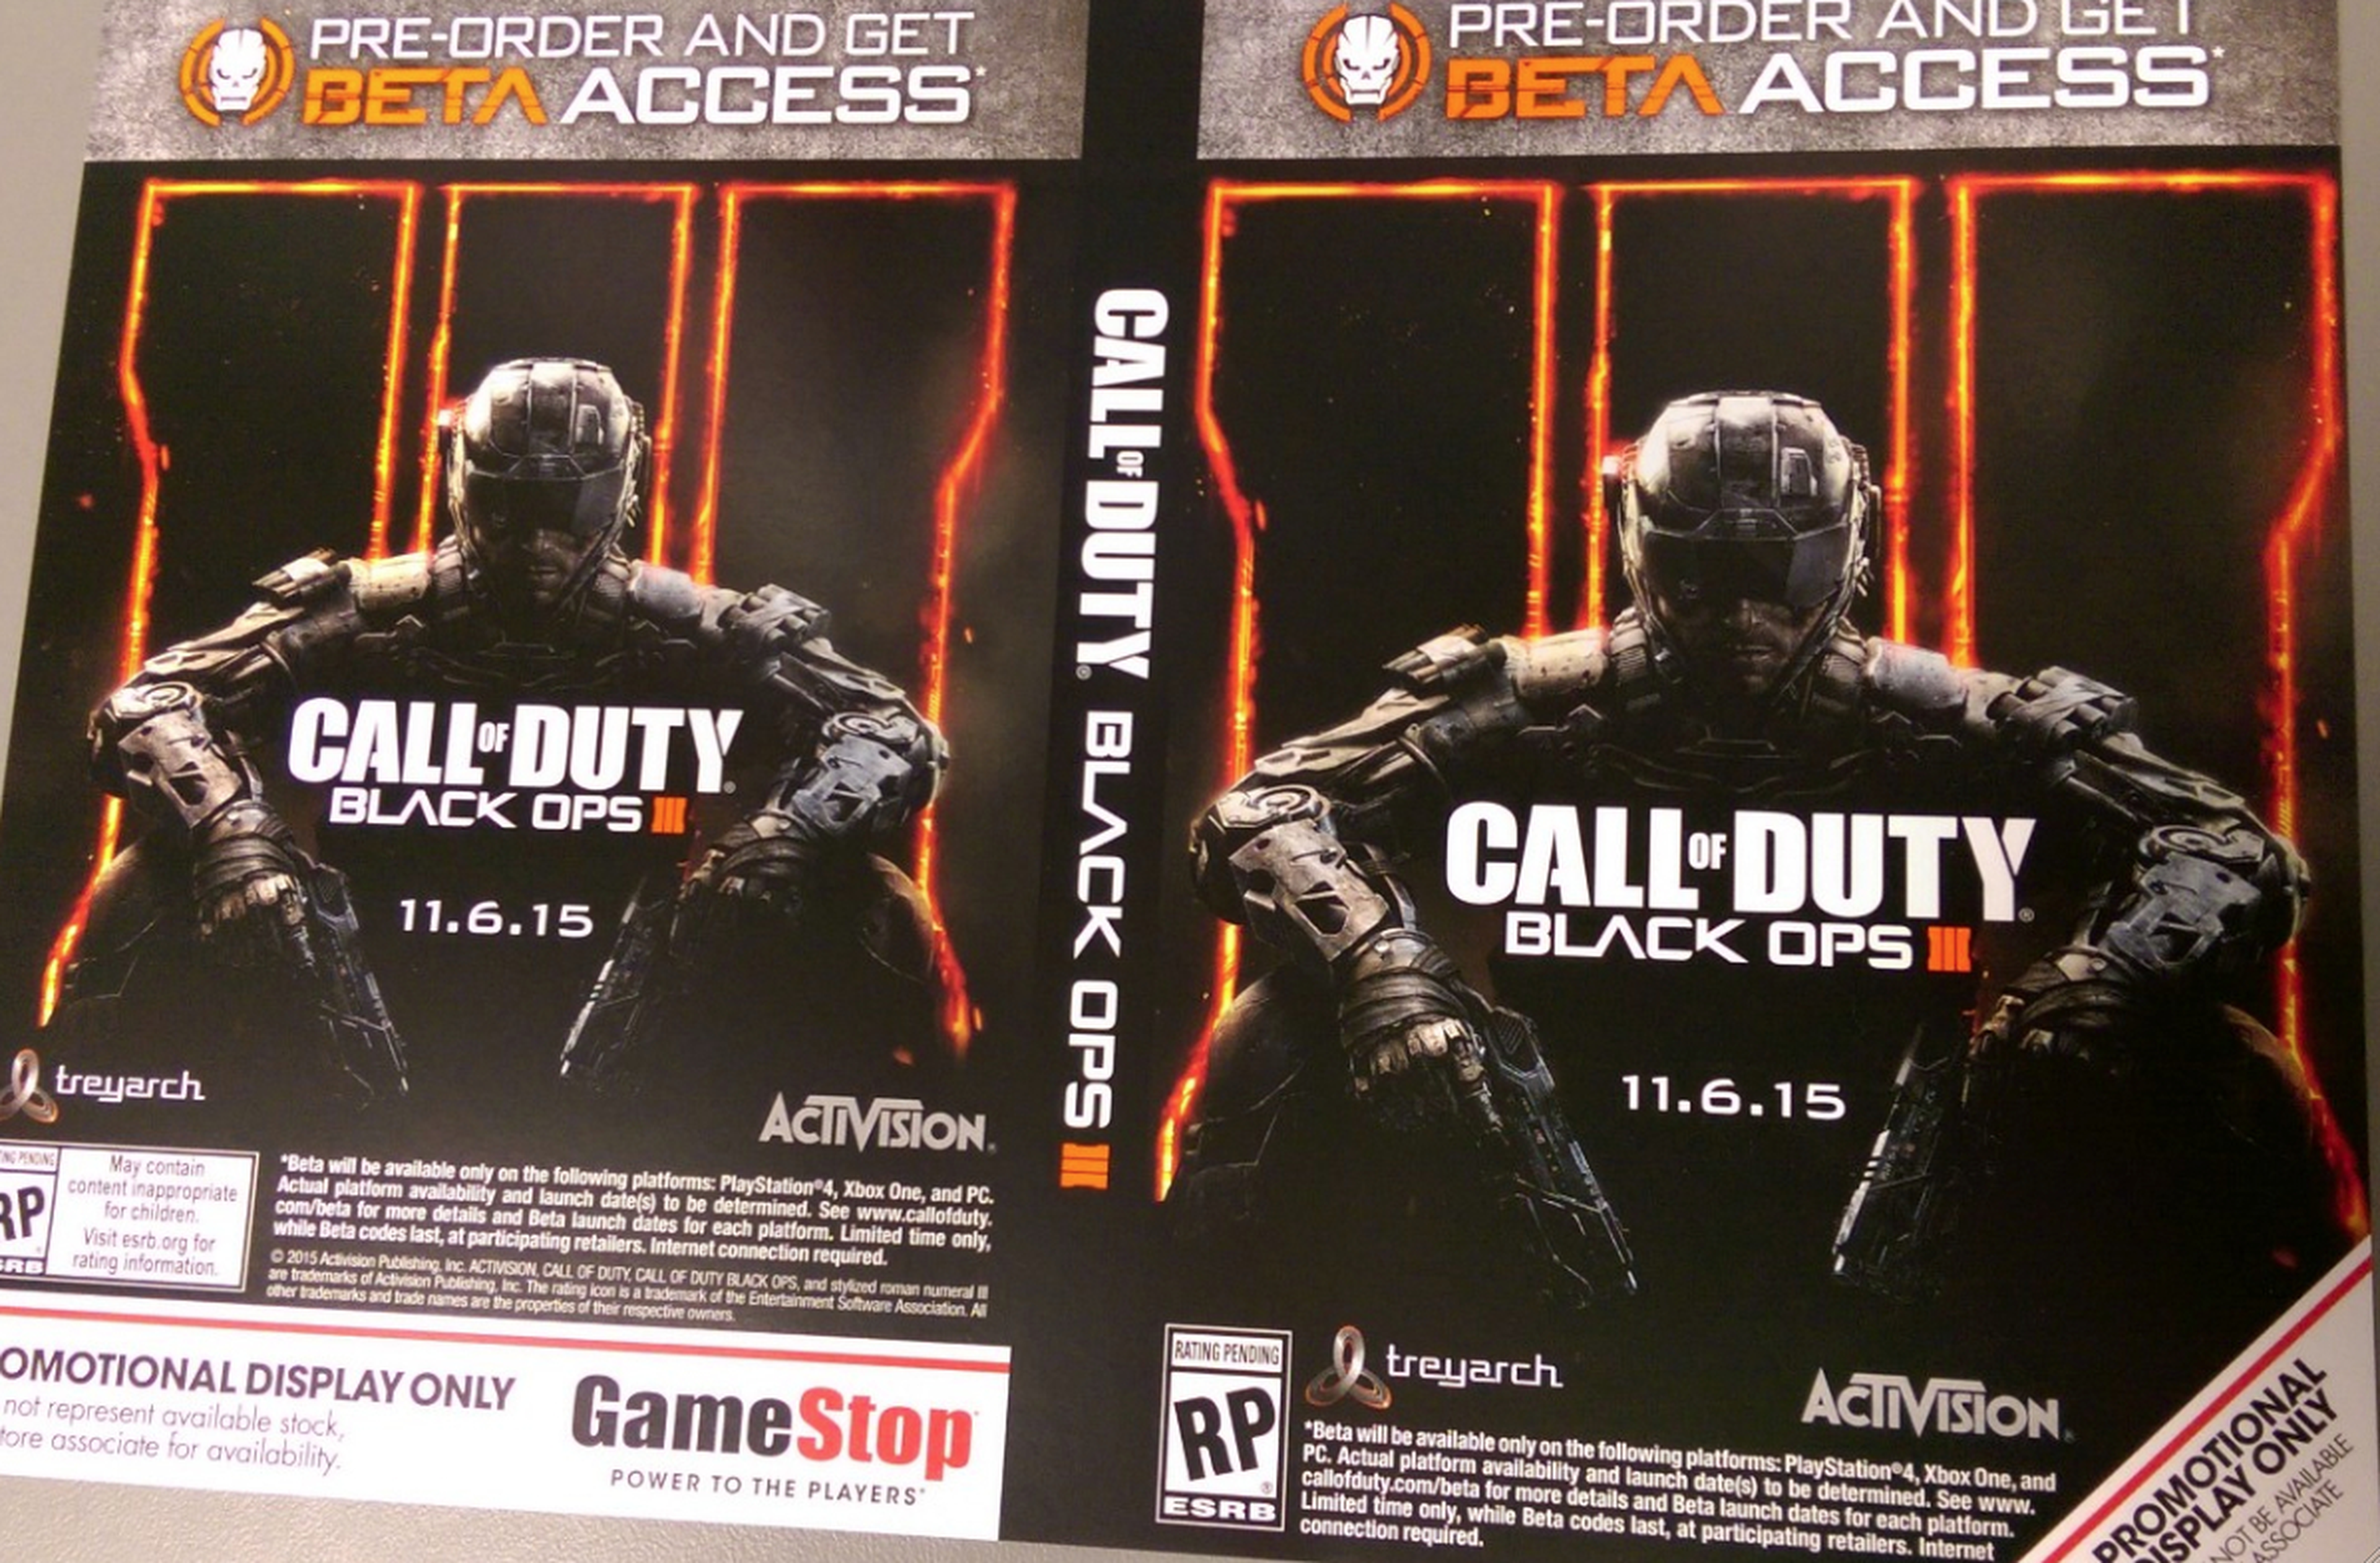 Call of Duty Black Ops 3, posible fecha y beta para PS4, Xbox One y PC